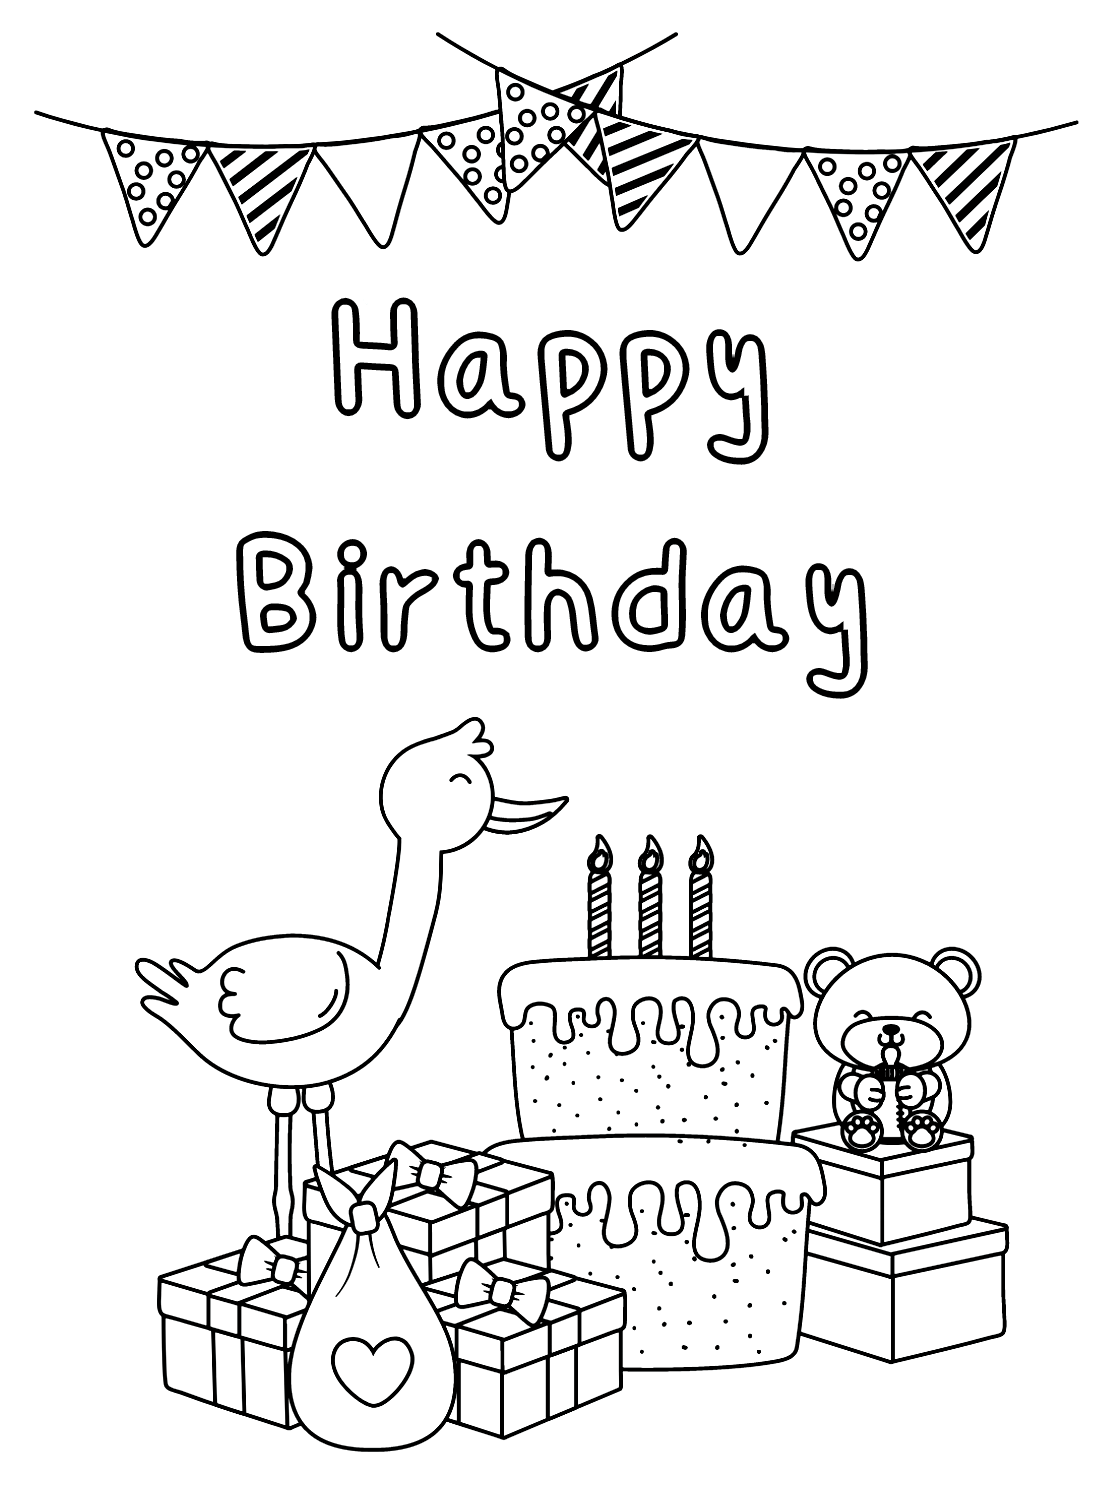 Happy Birthday Stork from Stork